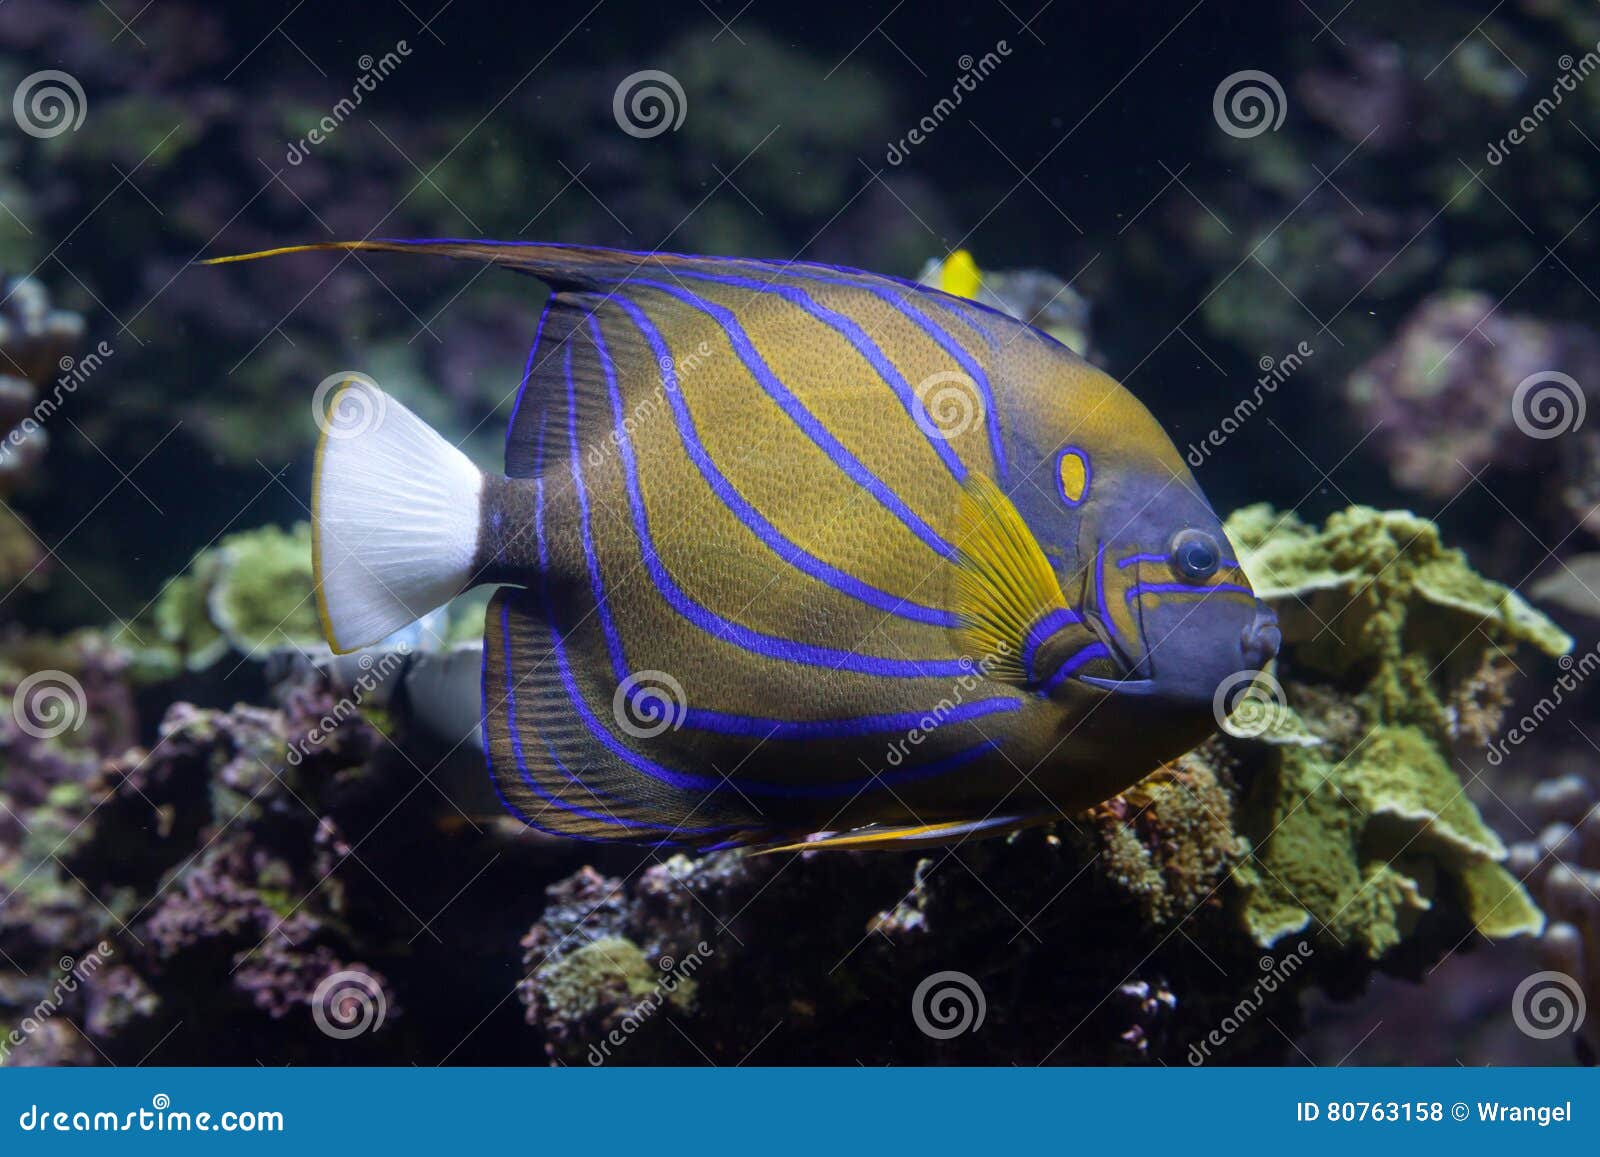 Blue Ring Angelfish Pomacanthus Annularis Aquarium Stock Photo 60476812 |  Shutterstock